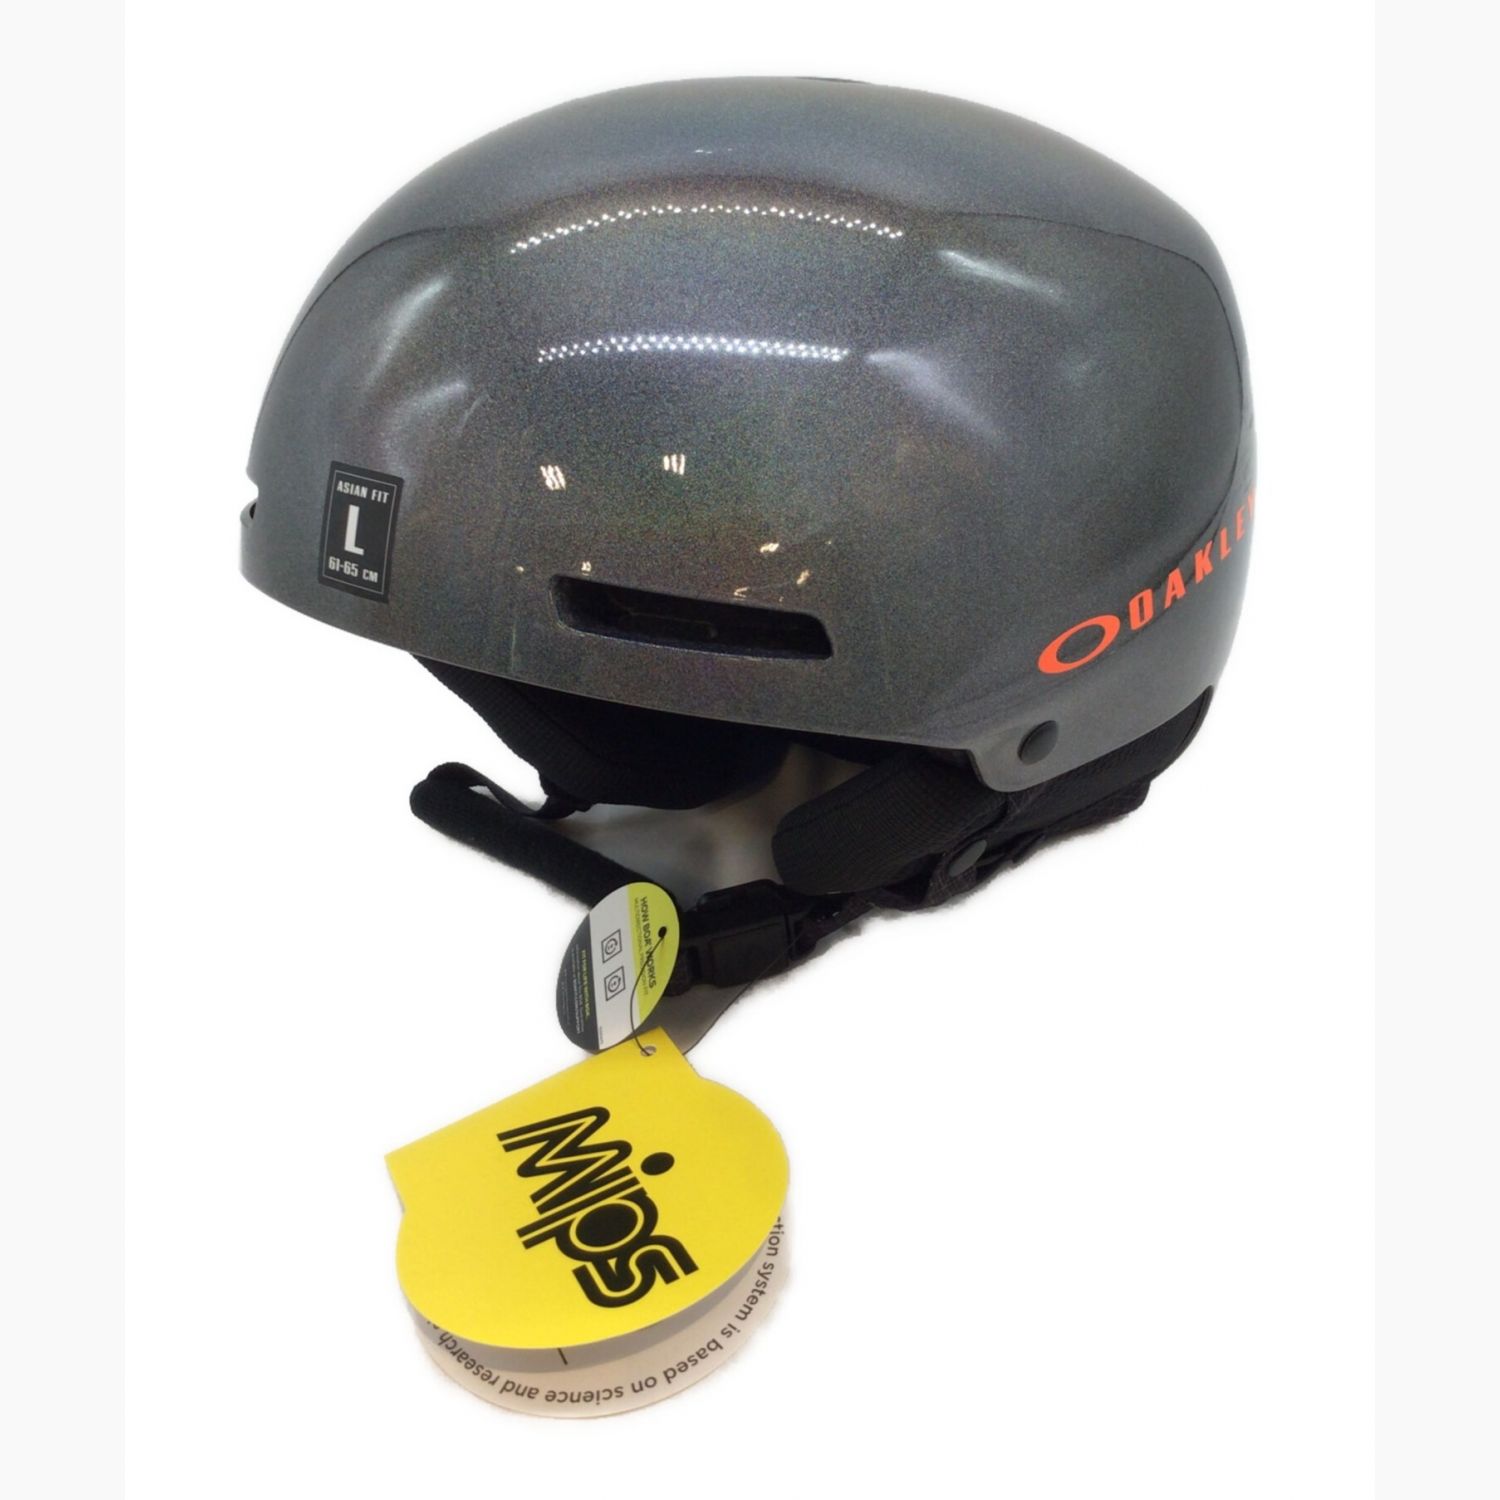 OAKLEY (オークリー) ヘルメット Lサイズ グレー MOD1 PRO ASIAN FIT 